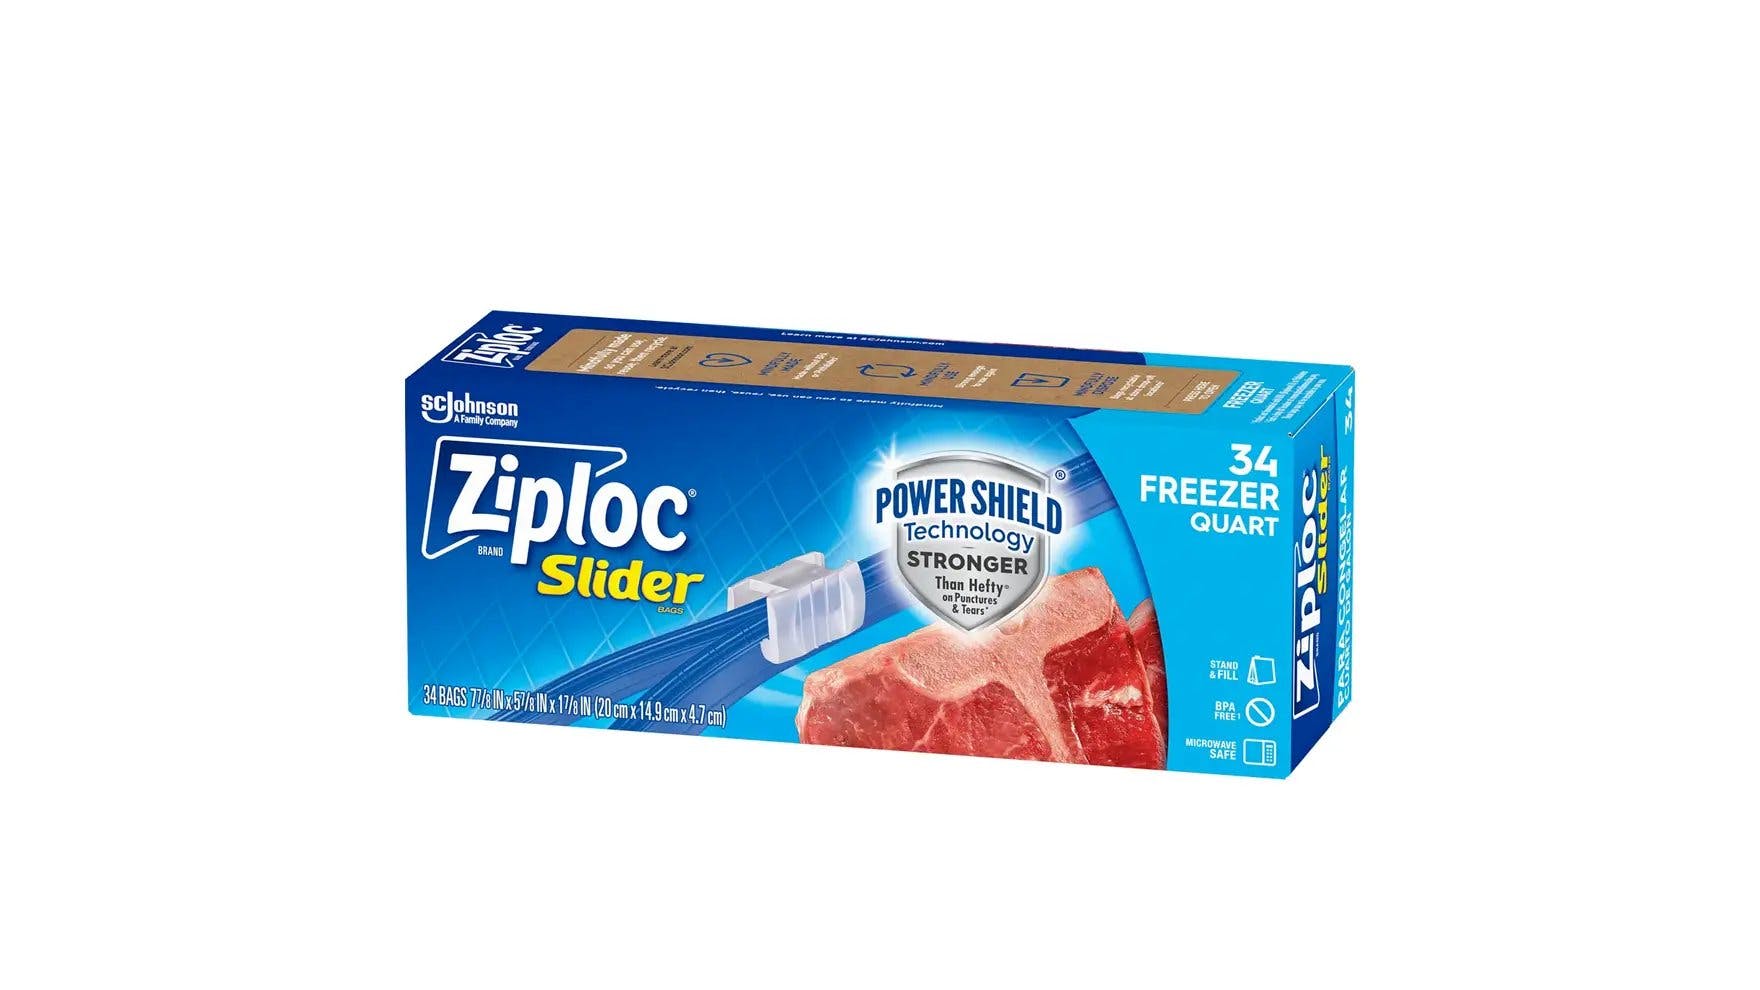 Parte delantera de la caja de bolsas slider Ziploc para congelador medianas de cuarto de galón